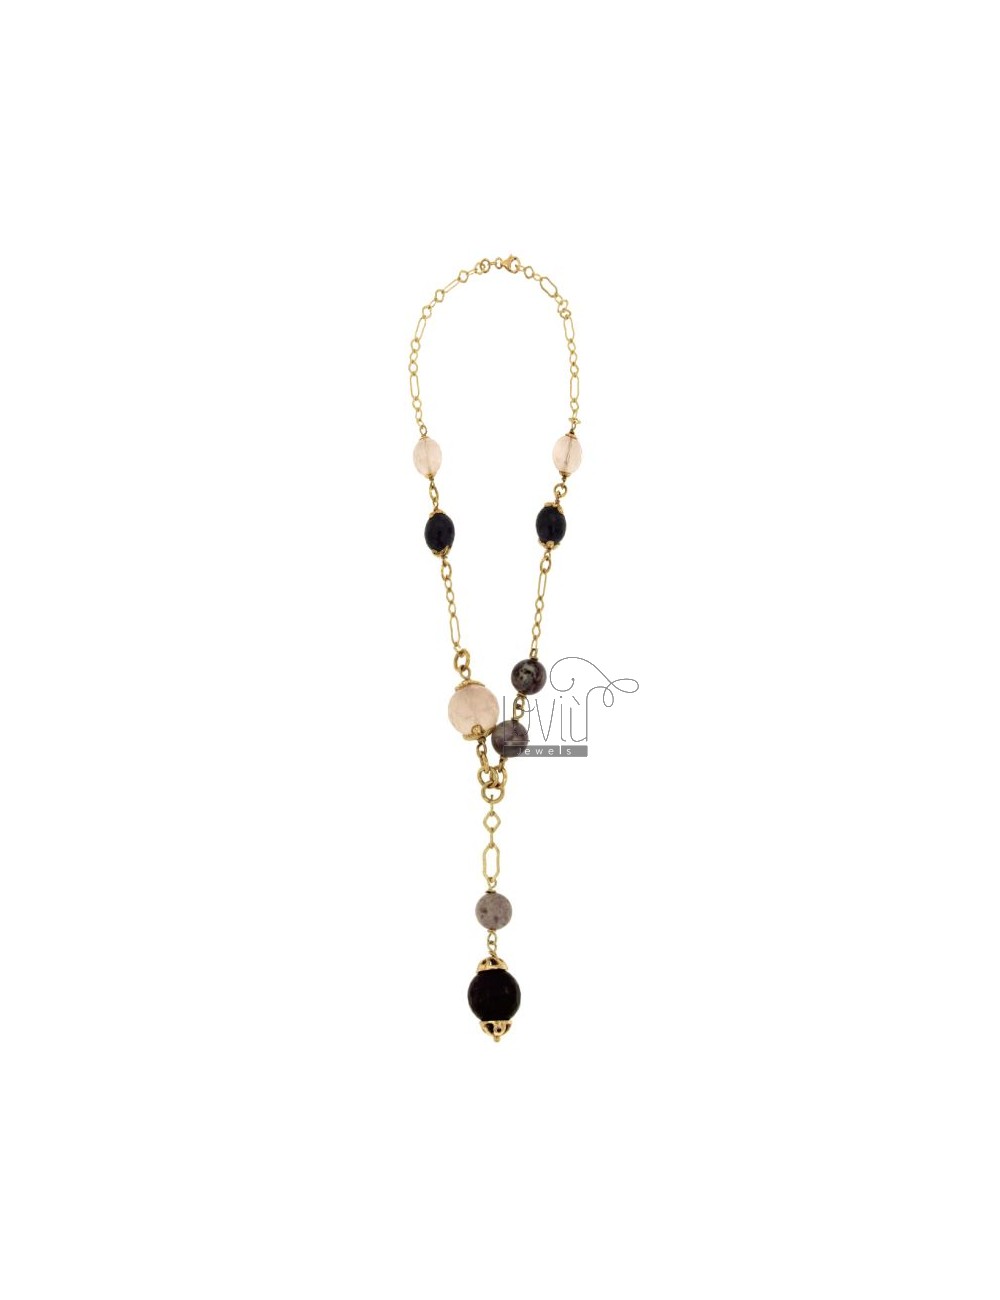 Halskette mit Perlchen und Herz in silber-lila 86 cm